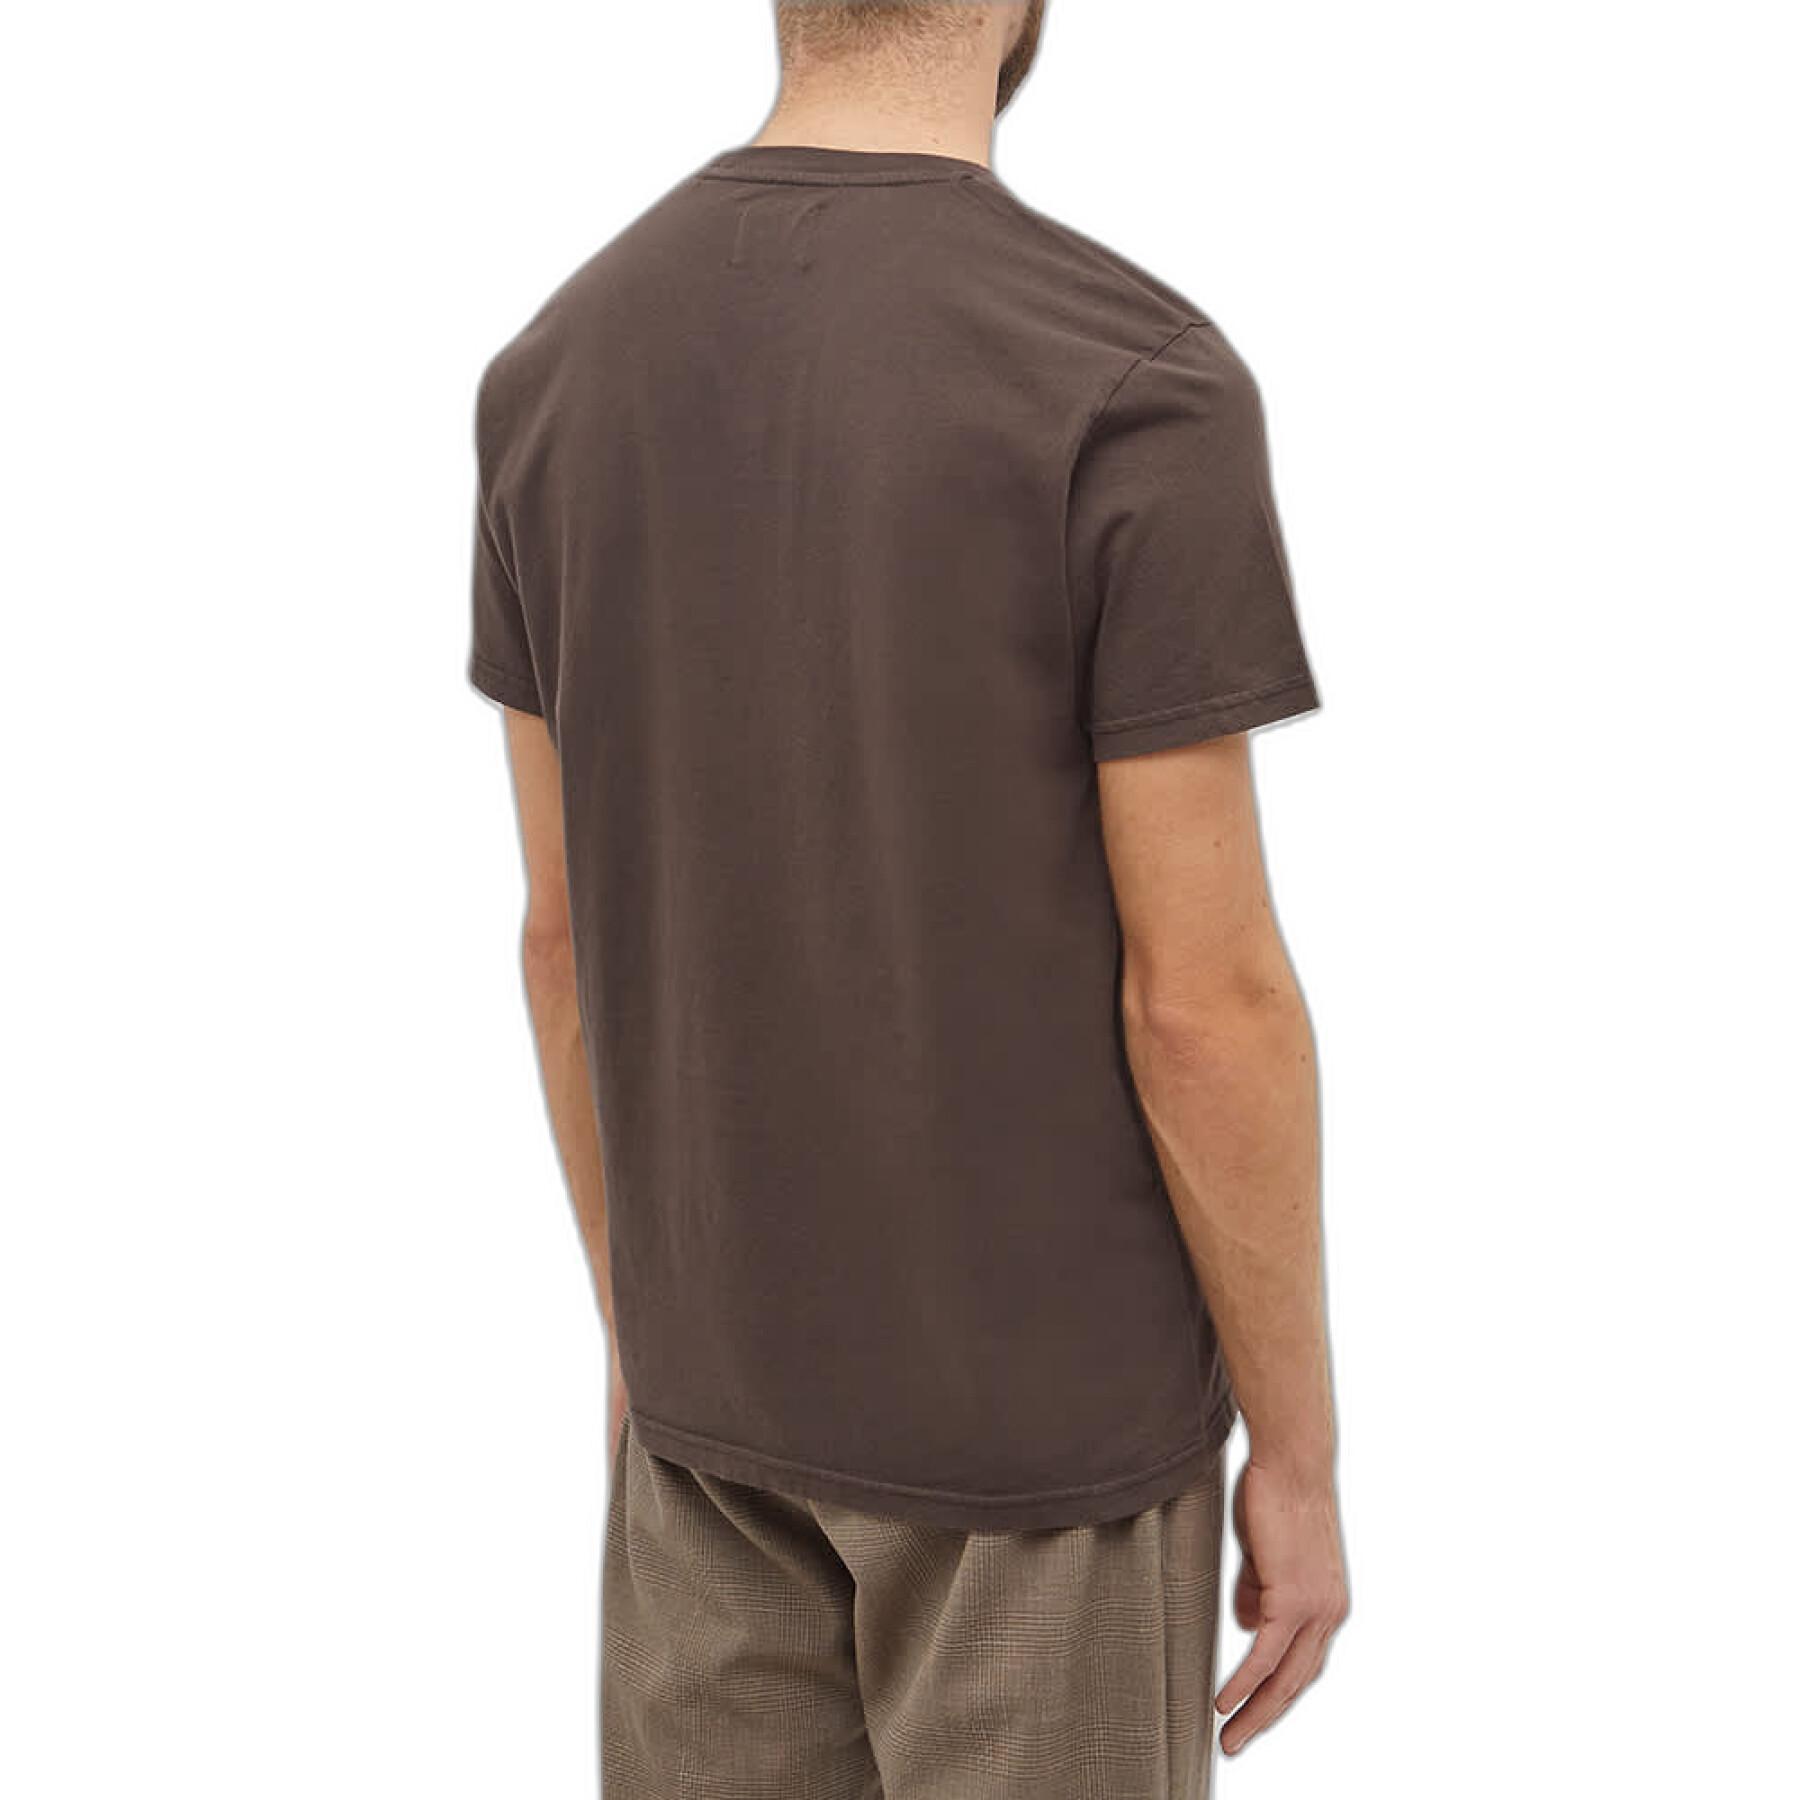 Maglietta Colorful Standard Cinnamon Brown